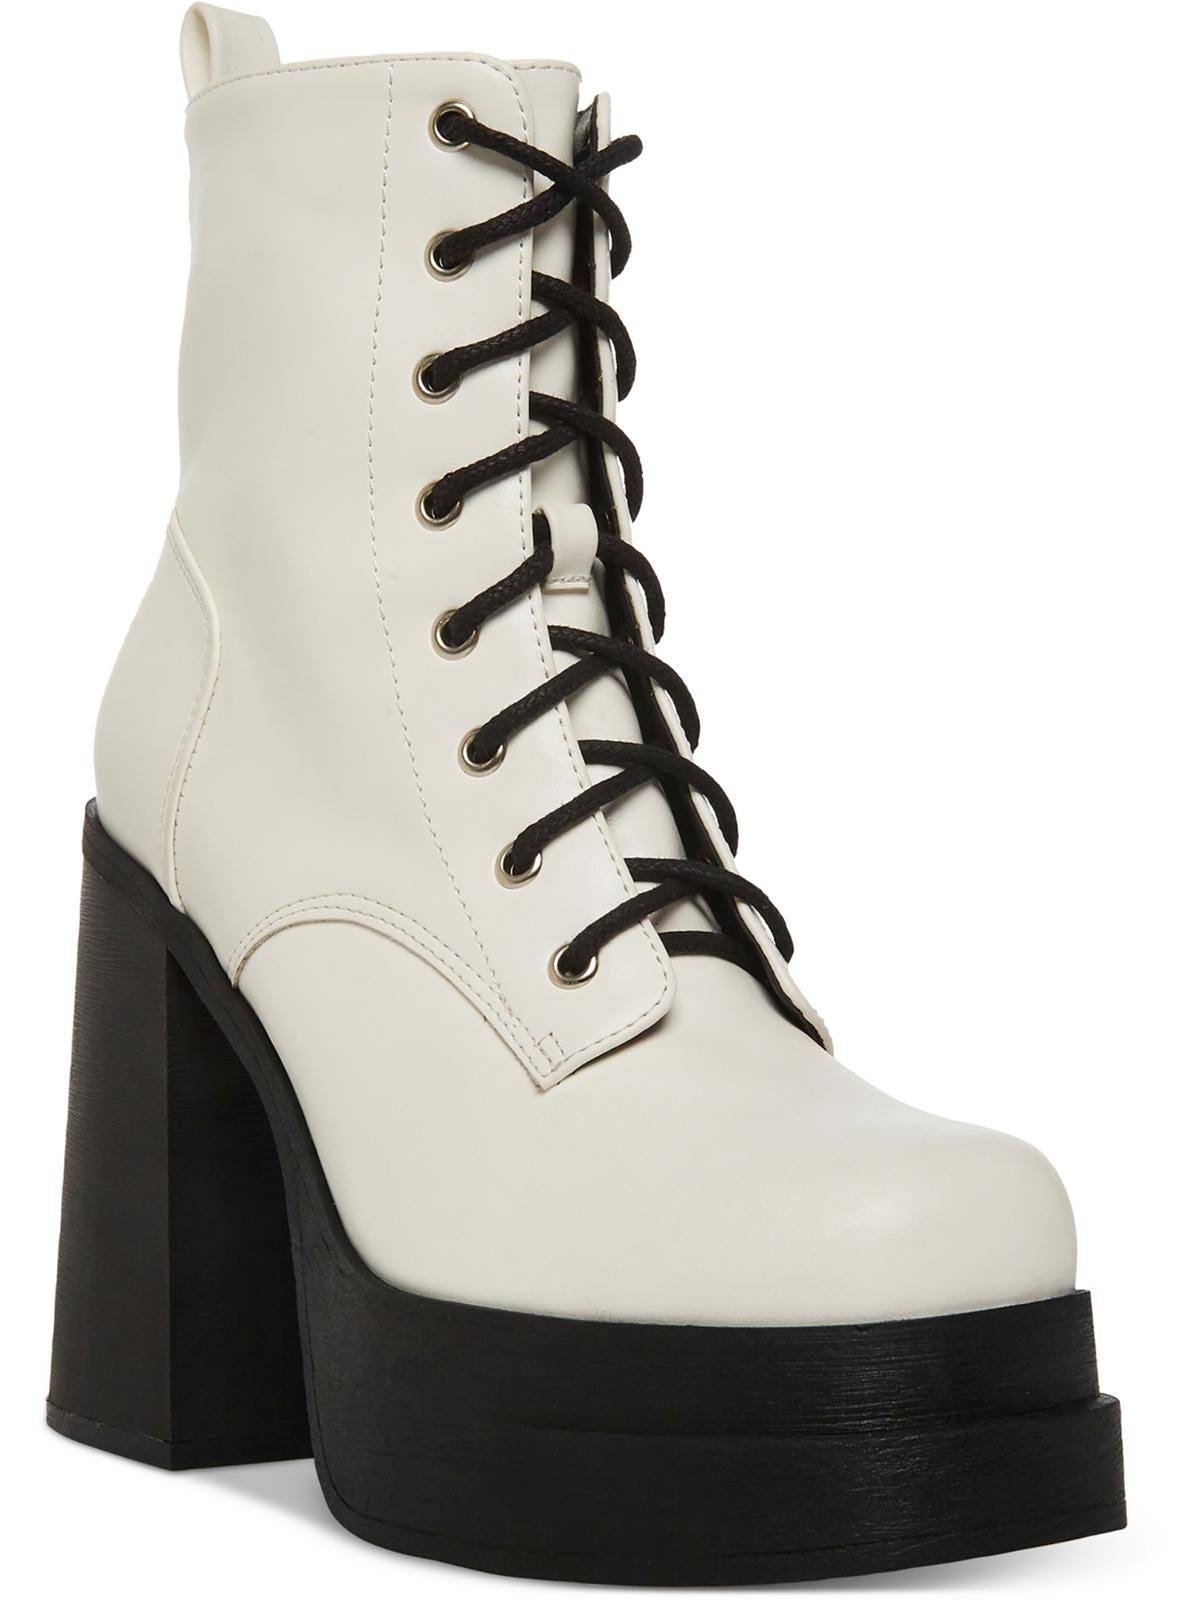 Madden Girl White Casual Platform Booties - Block Heel & Zip Up Closure | Image